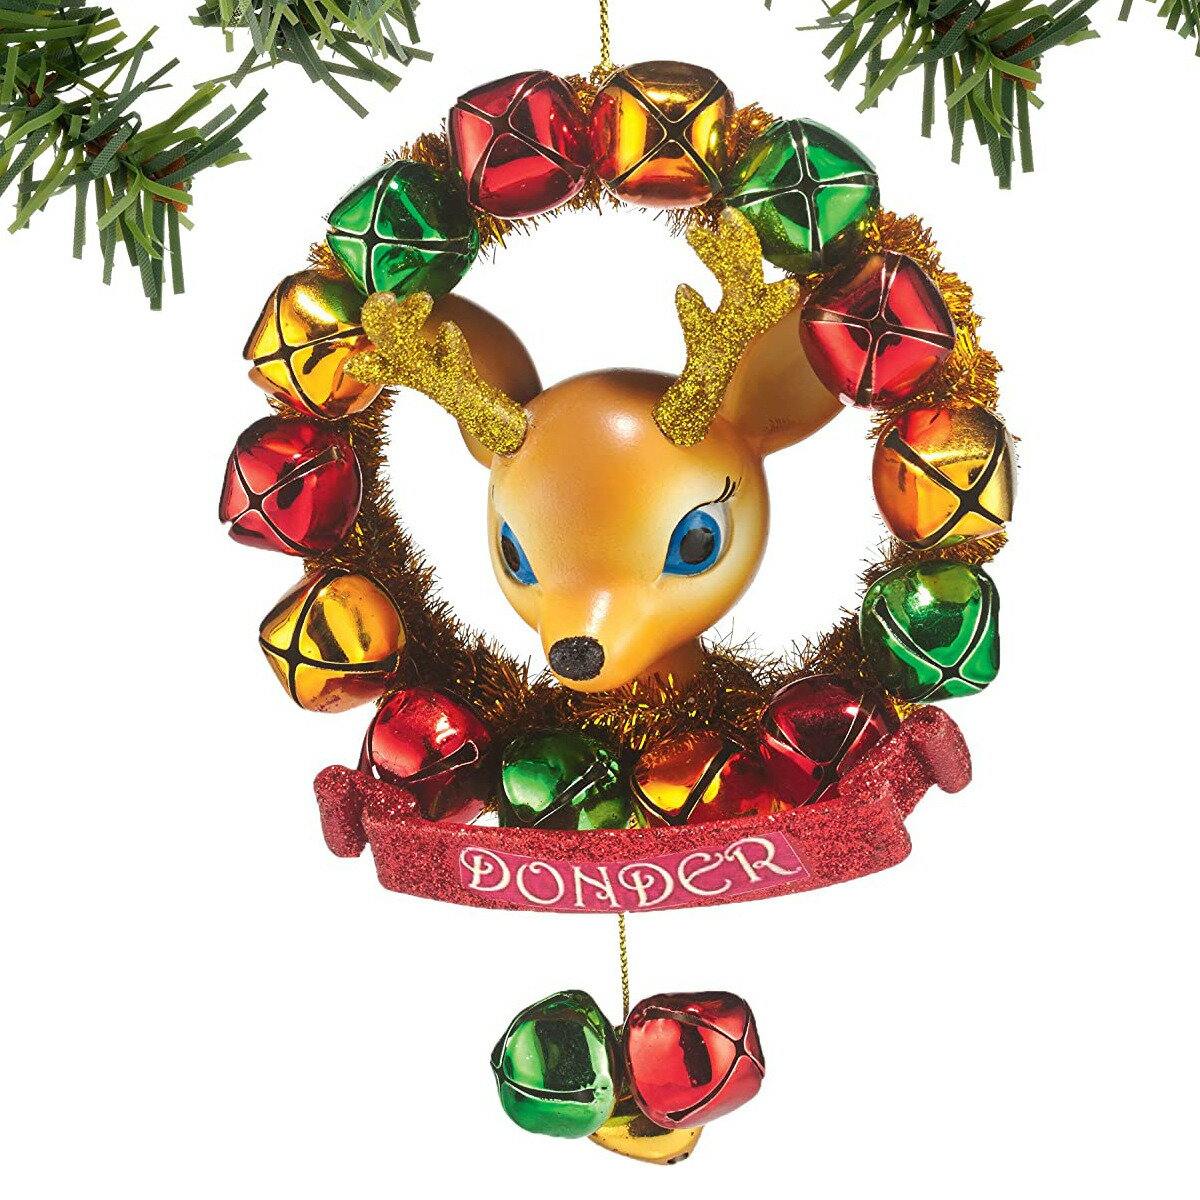 デパートメント56 Department56 トナカイ物語 Reindeer Tales ドンダー リースオーナメント クリスマス 4046979 Xmas 置物